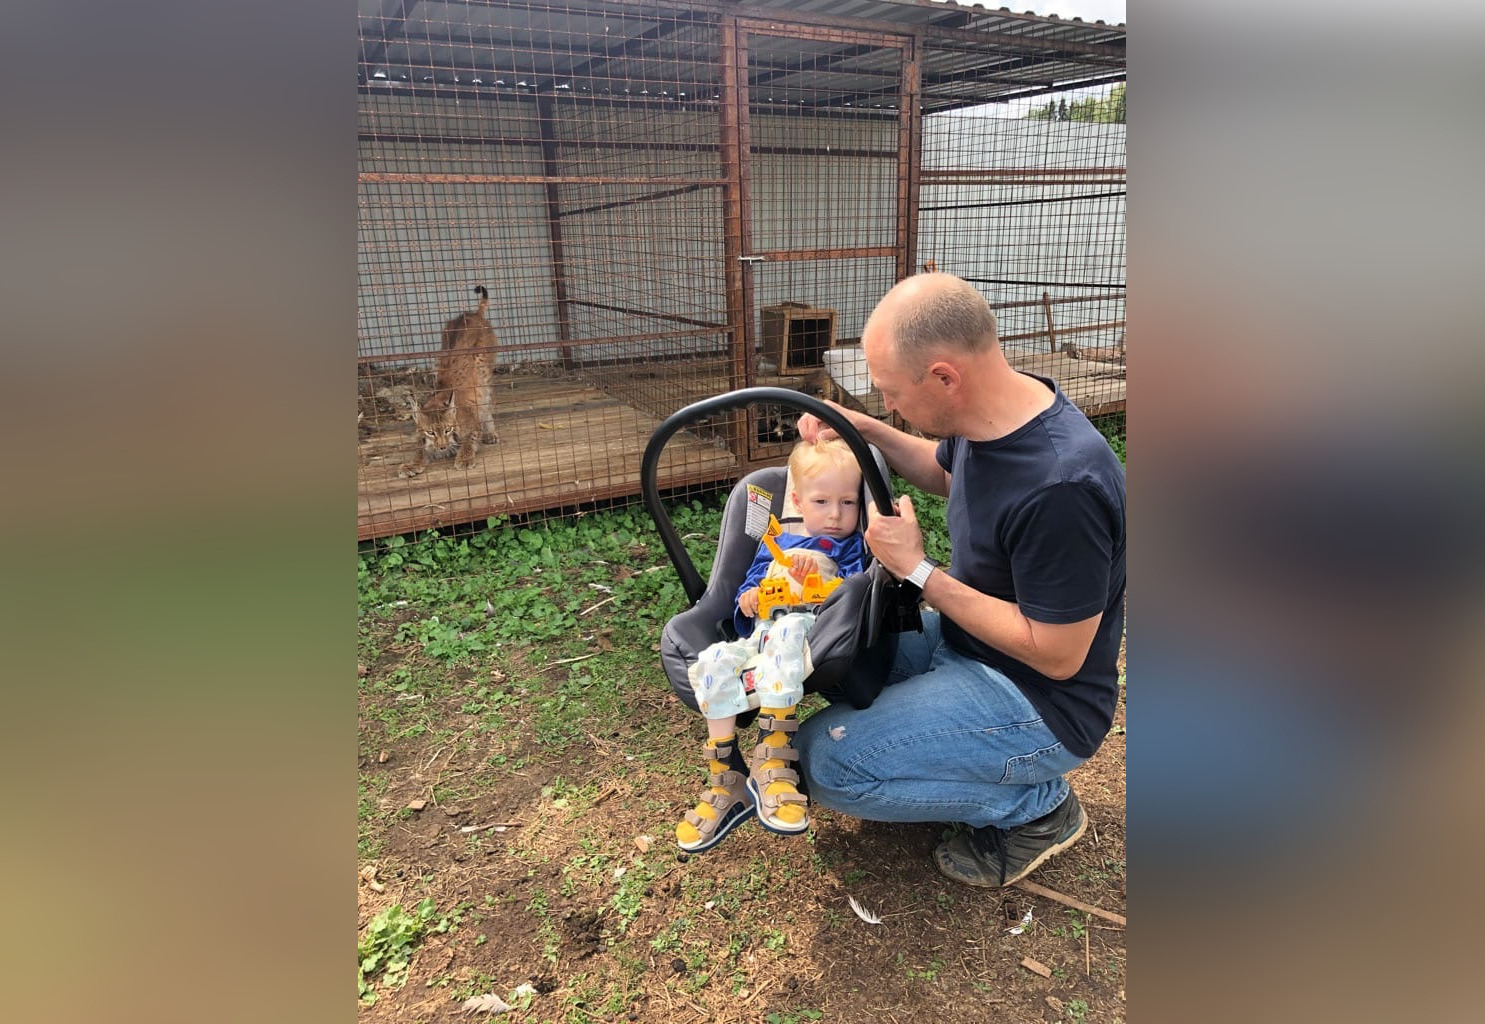 Маленький кировчанин Максим Гришин  с семьей посетил домашний зоопарк